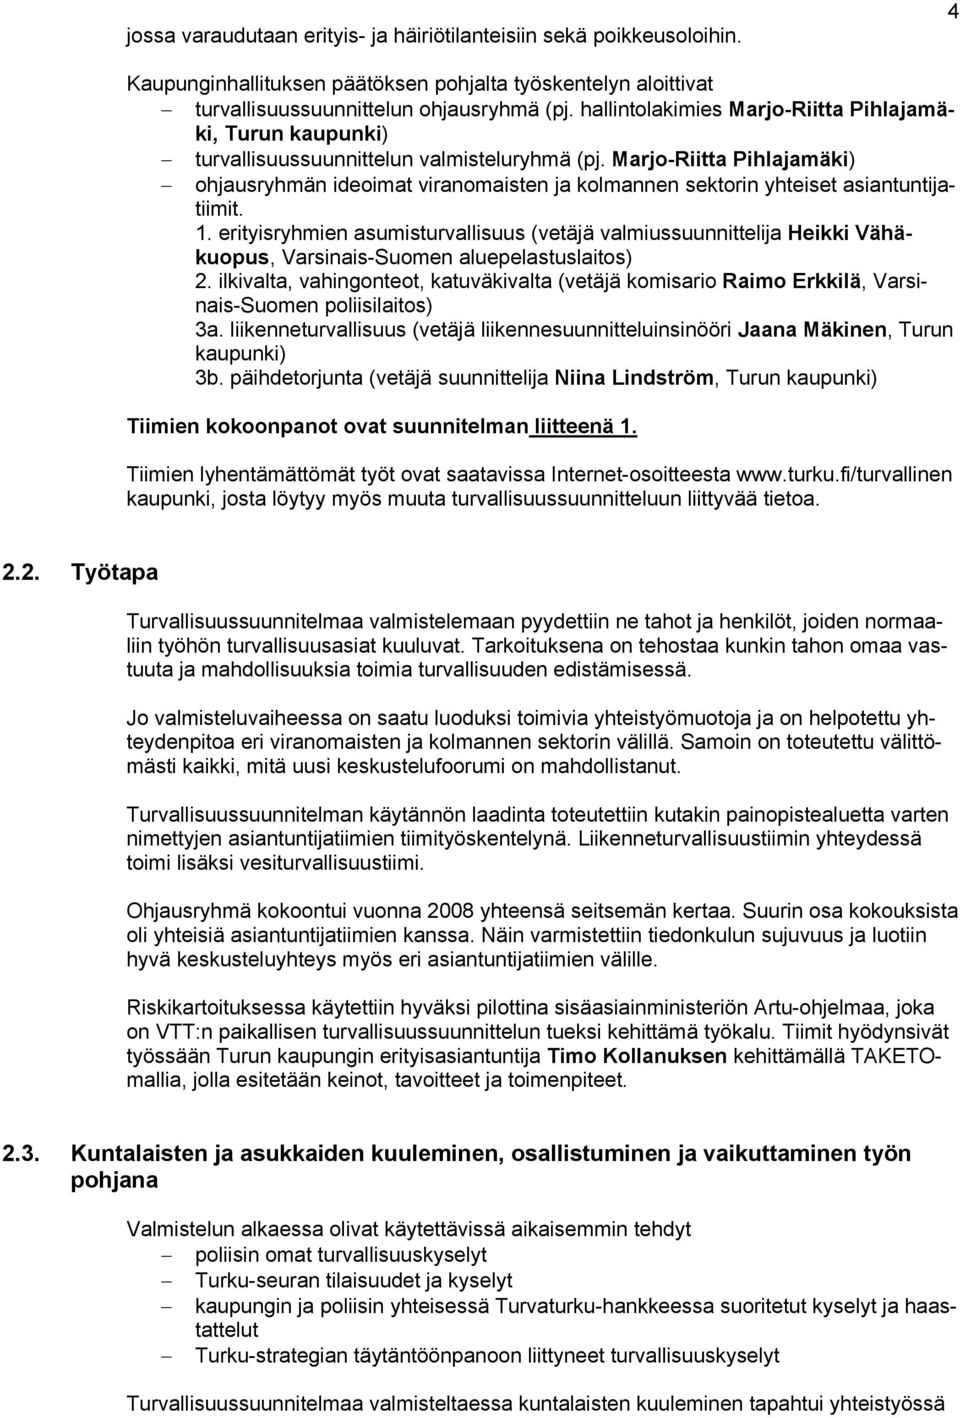 Marjo-Riitta Pihlajamäki) ohjausryhmän ideoimat viranomaisten ja kolmannen sektorin yhteiset asiantuntijatiimit. 1.